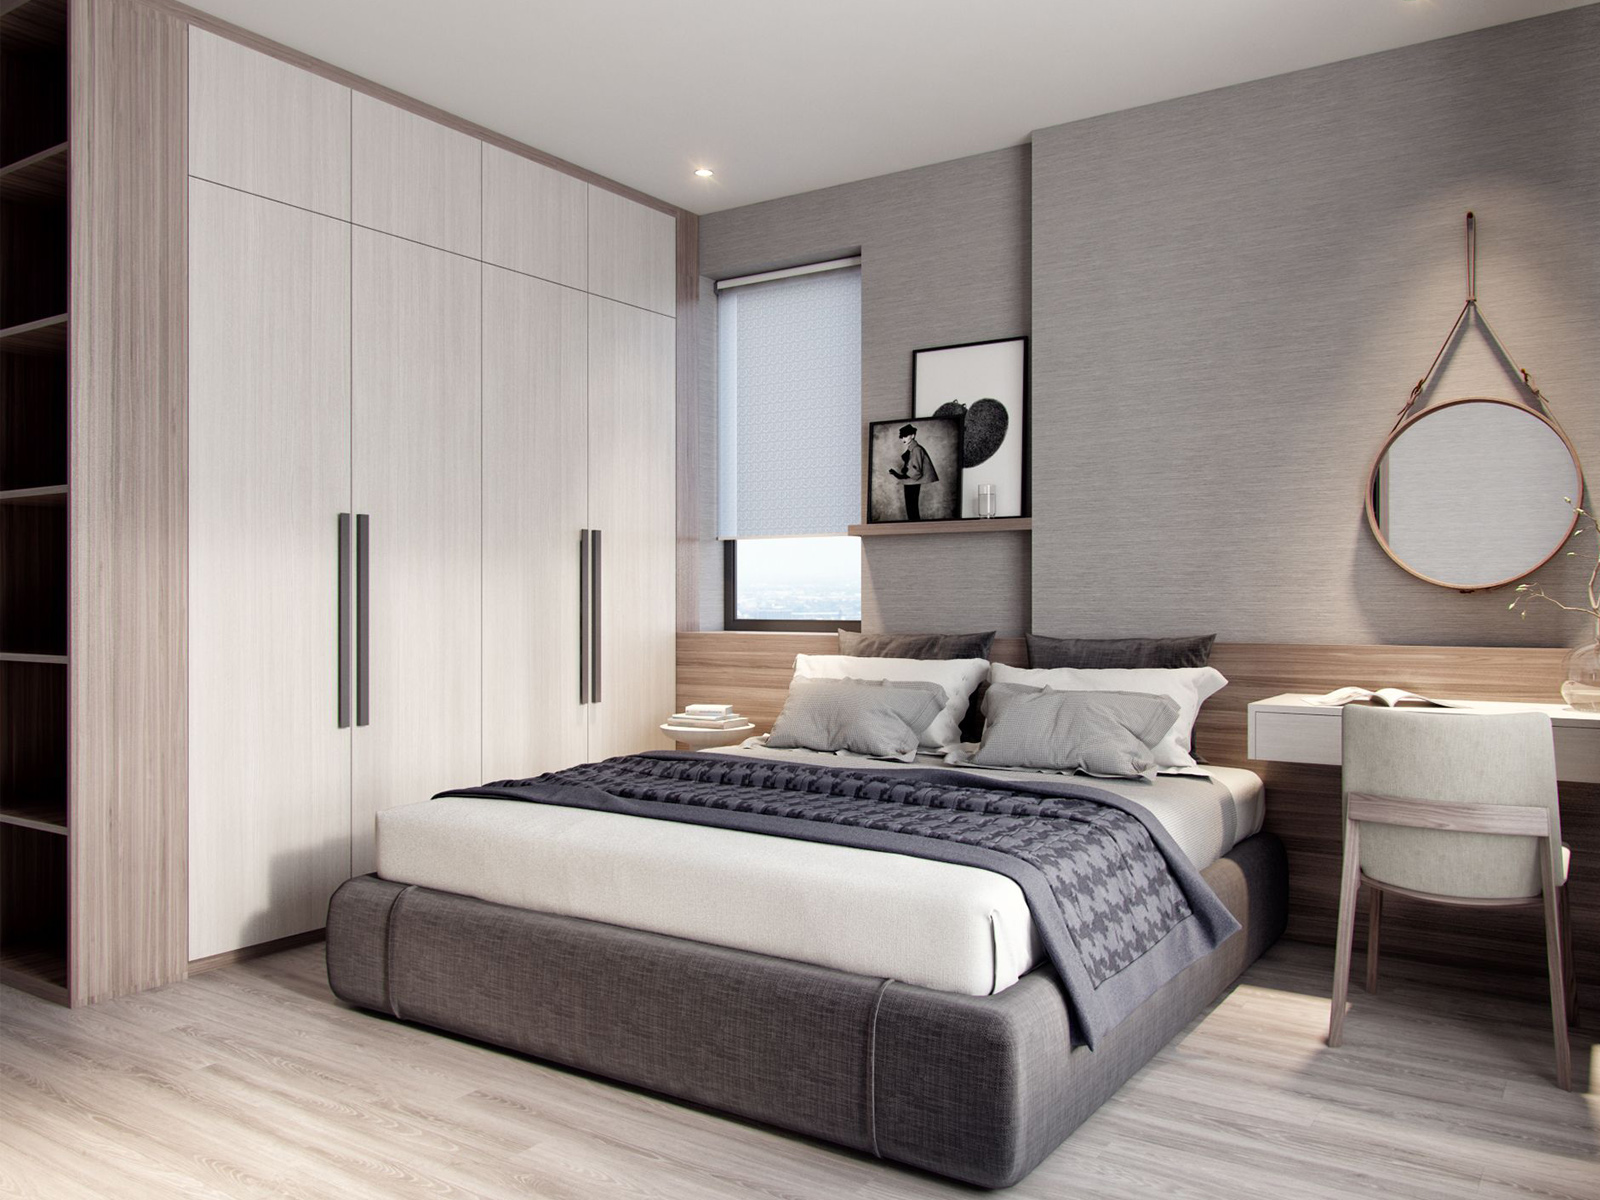 Hình ảnh thực tế phòng ngủ căn hộ S2.05 Vinhomes Smart City 2 phòng ngủ